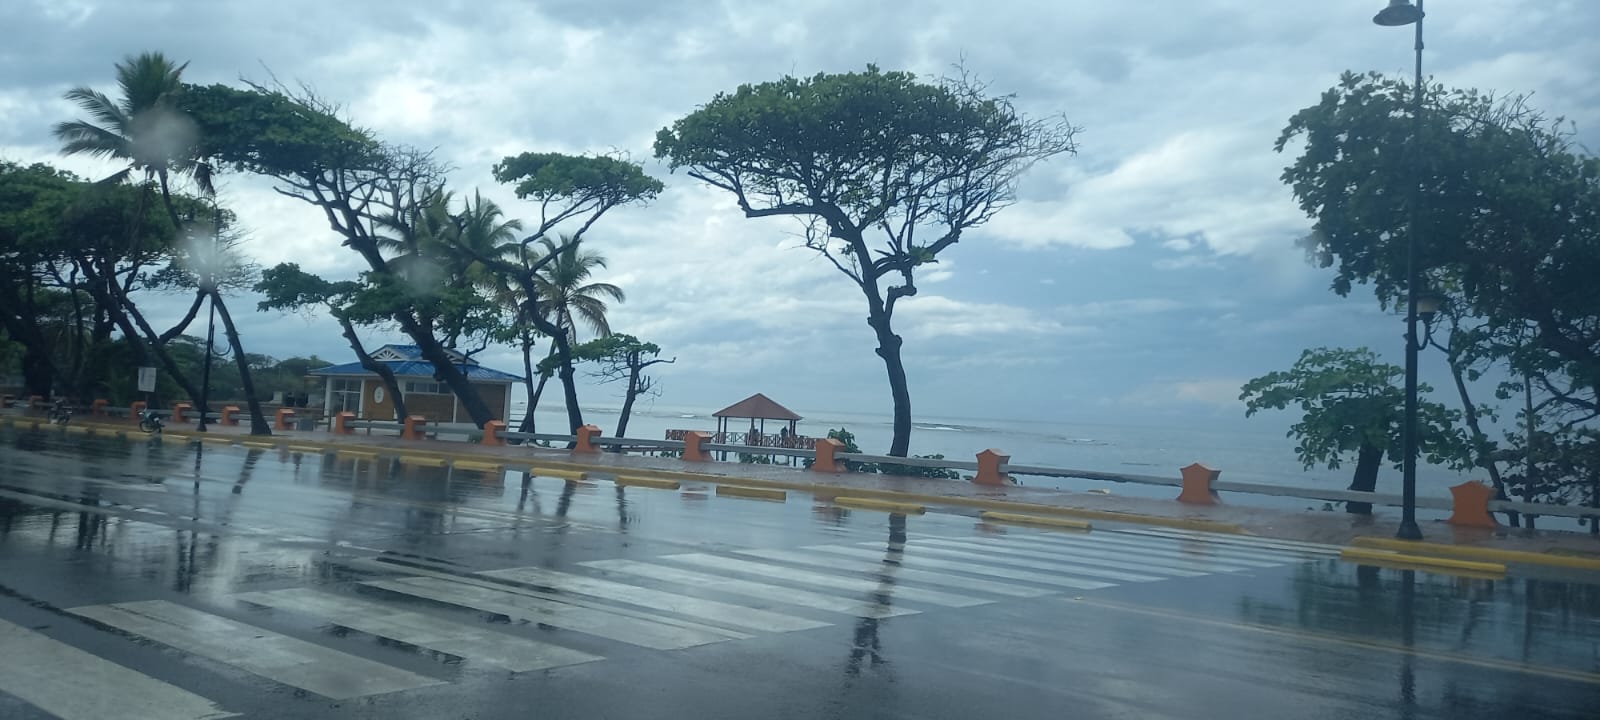 Anuncian lluvias para Puerto Plata y gran parte de RD durante las próximas horas